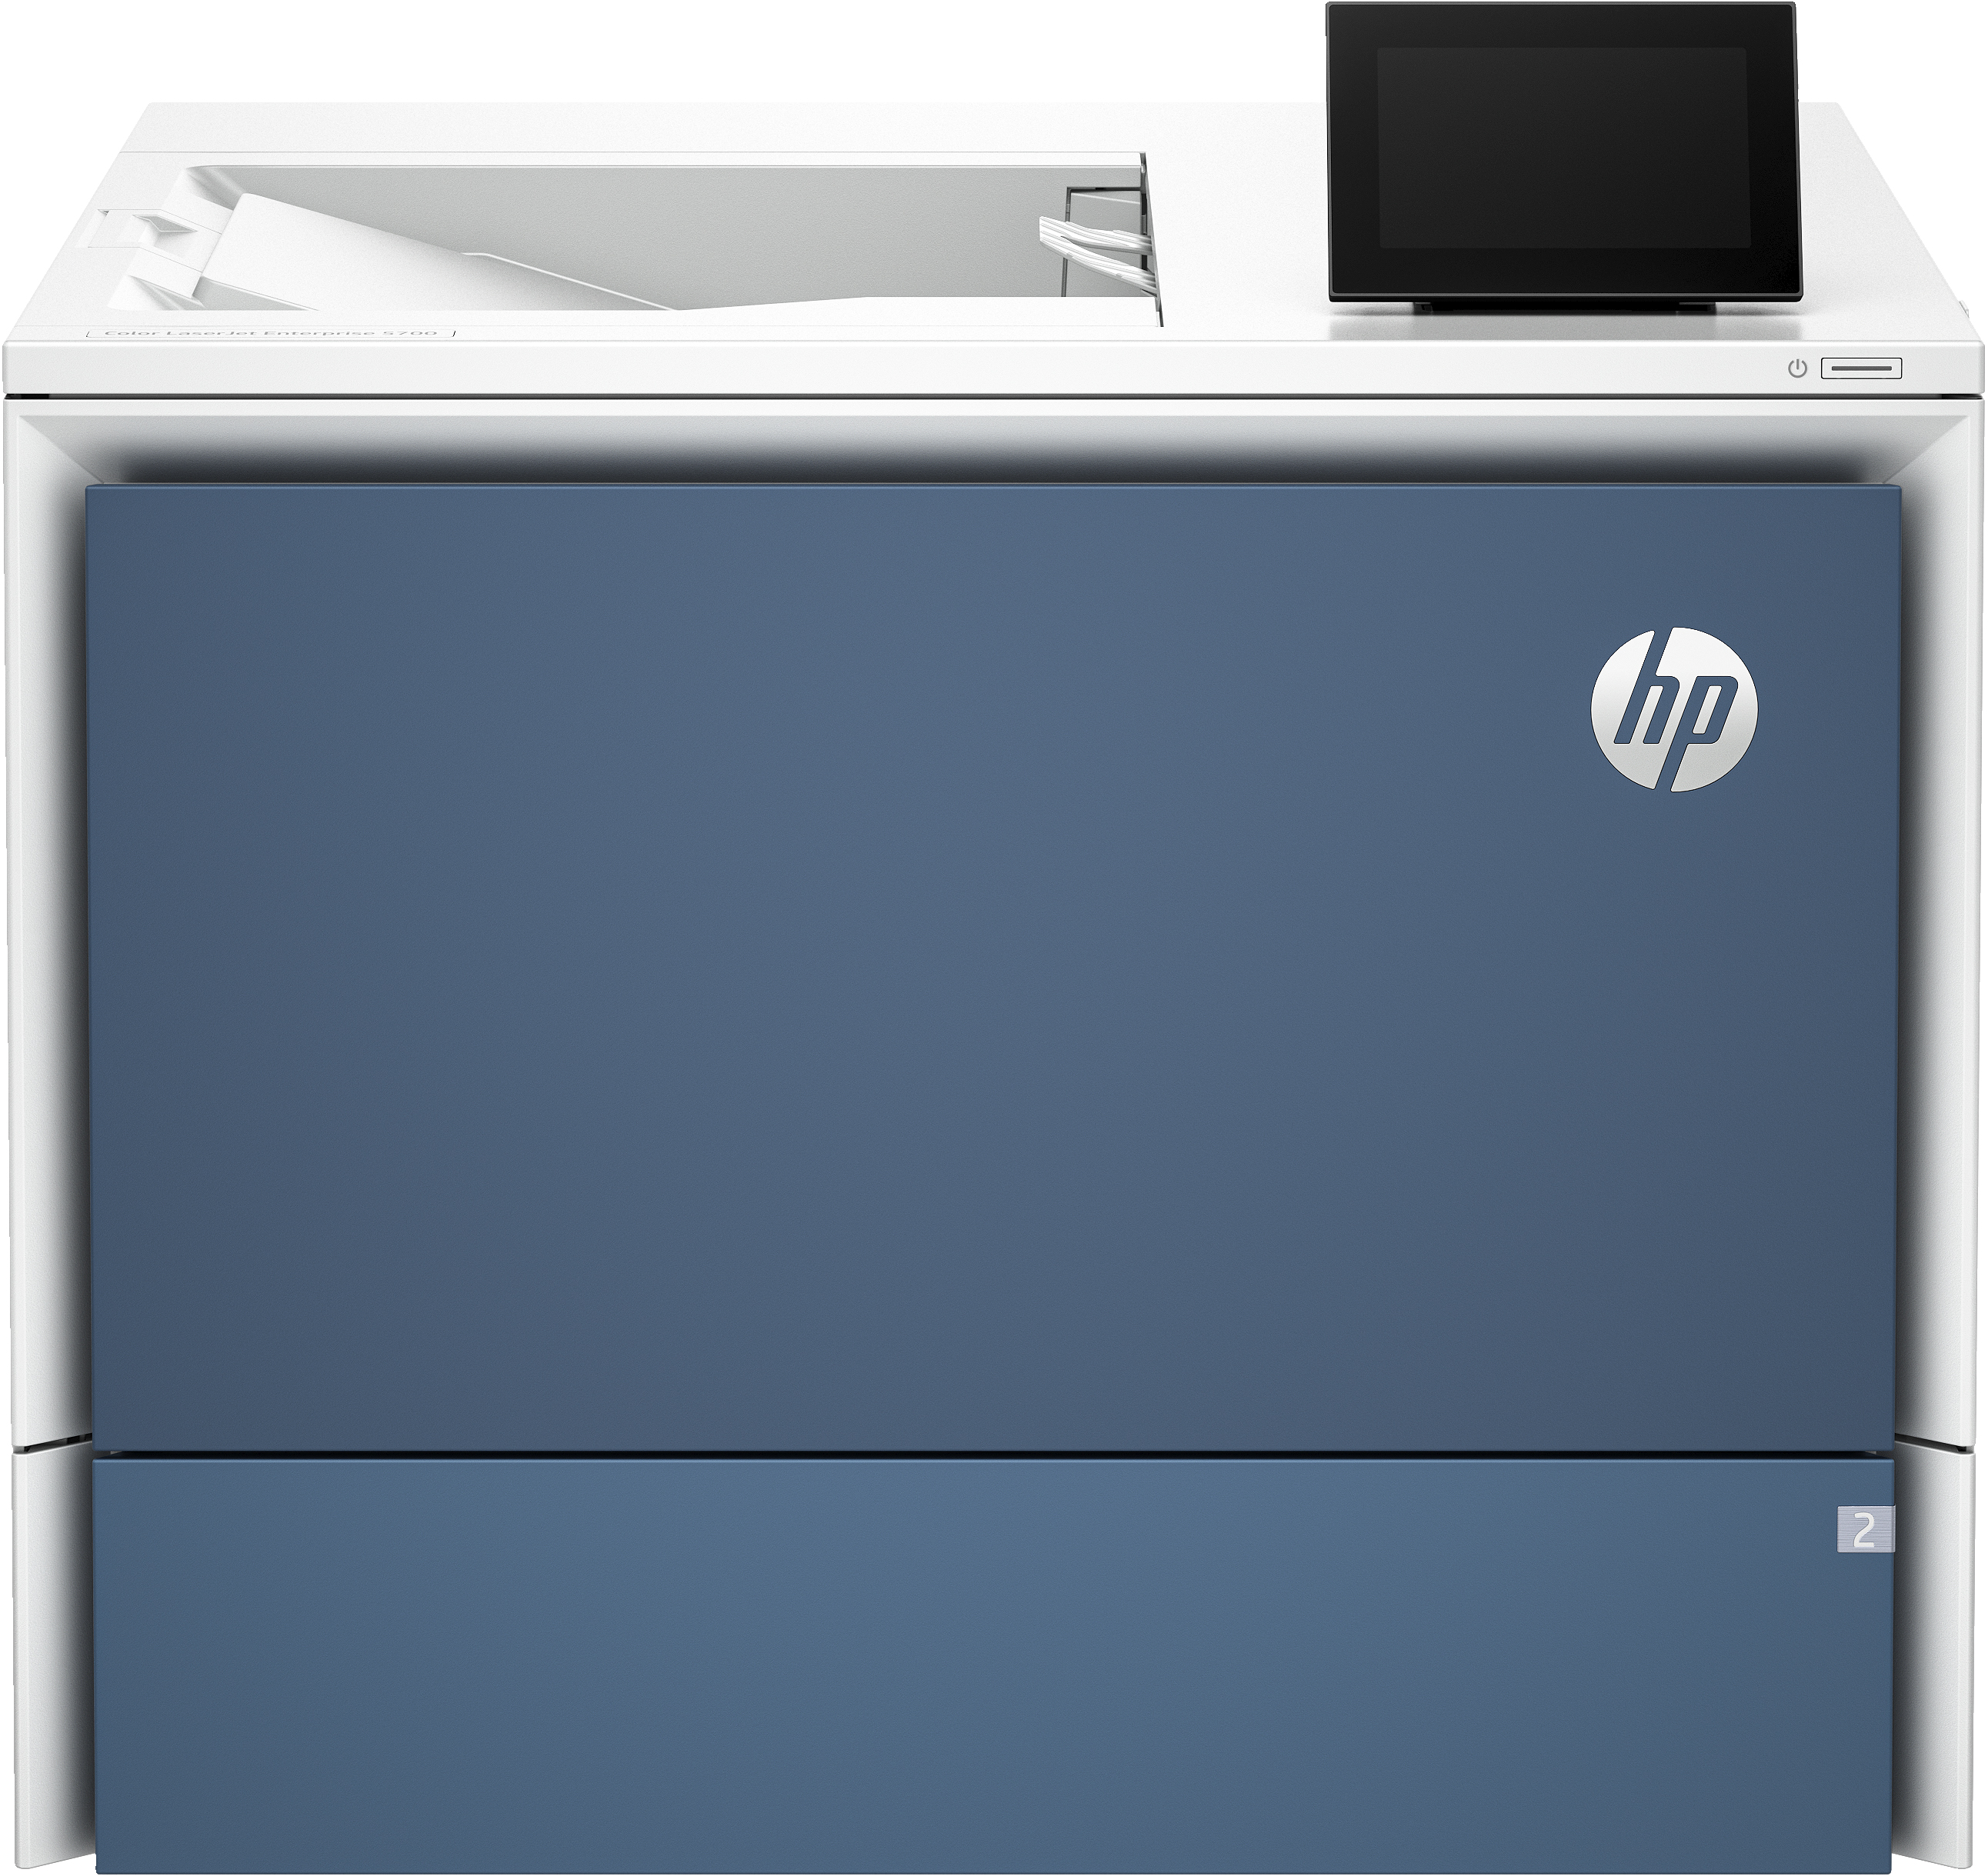 HP Color LaserJet Enterprise Stampante 5700dn, Color, Stampante per Stampa, porta unit flash USB anteriore; Vassoi ad alta capacit opzionali; touchscreen; Cartuccia TerraJet